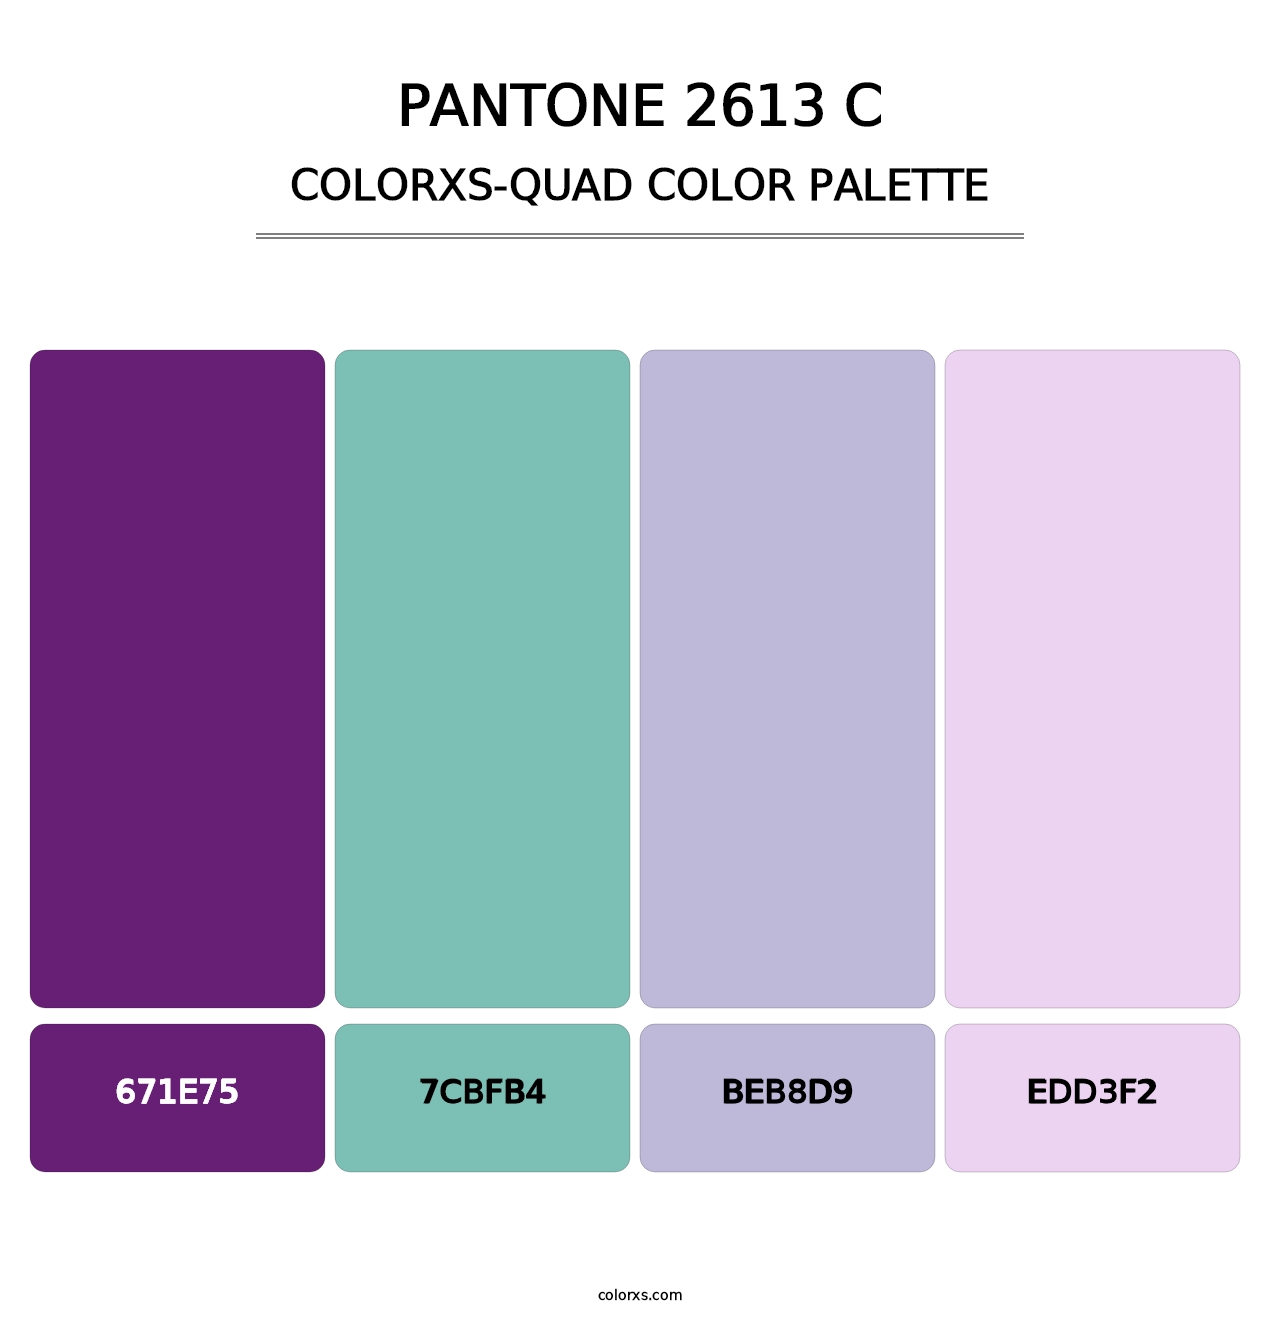 PANTONE 2613 C - Colorxs Quad Palette